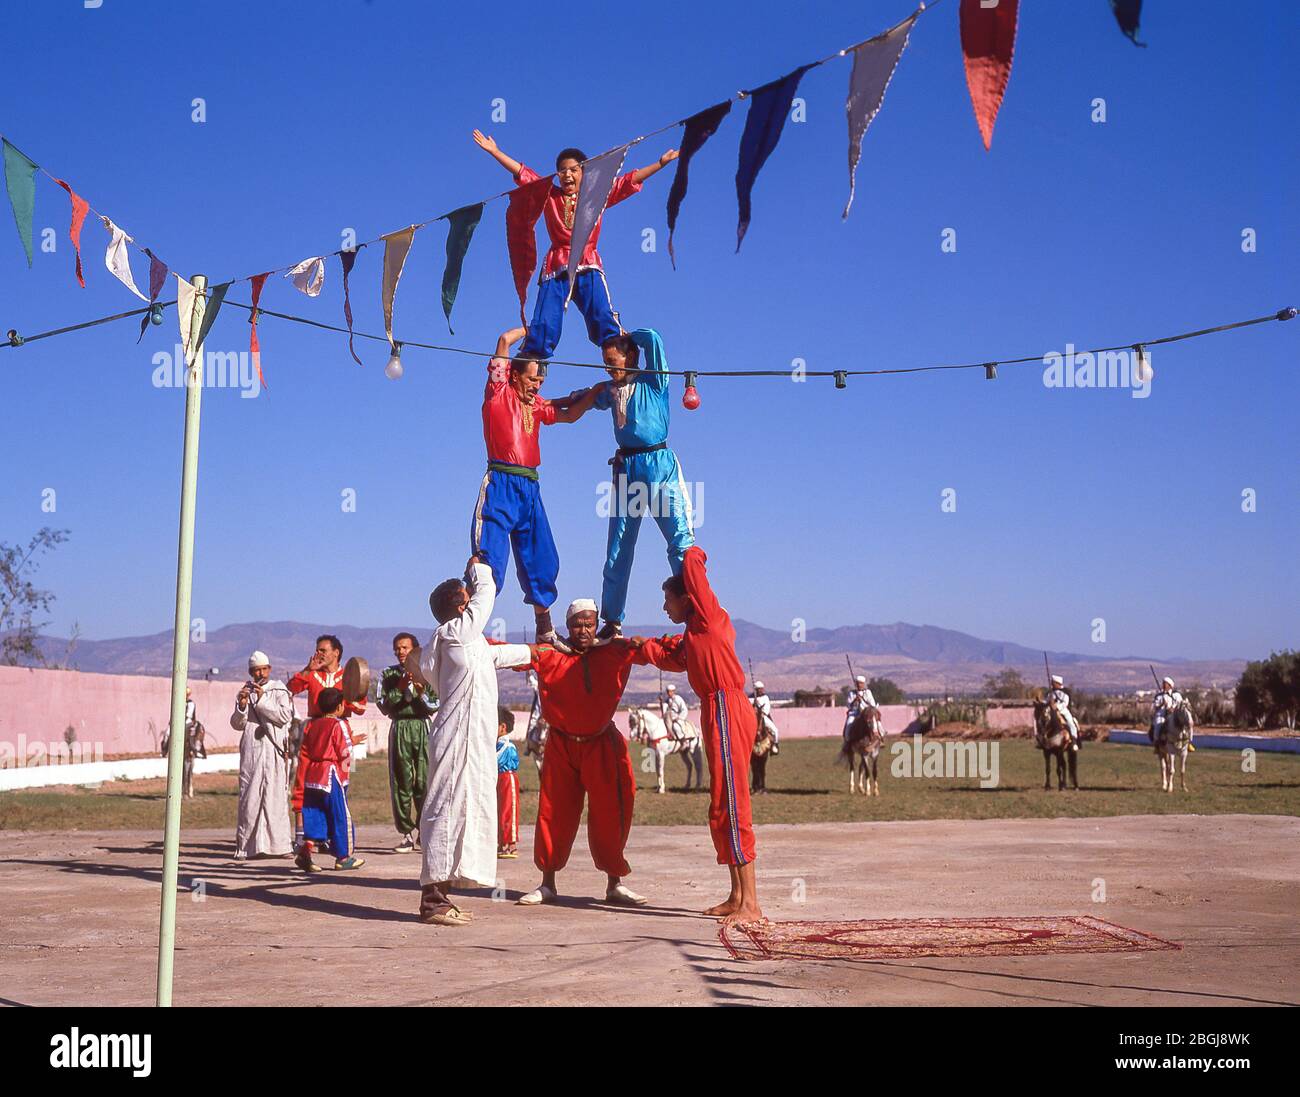 Acrobatic display at Fantasia Show, Agadir, Souss-Massa-Draâ Region, Morocco Stock Photo